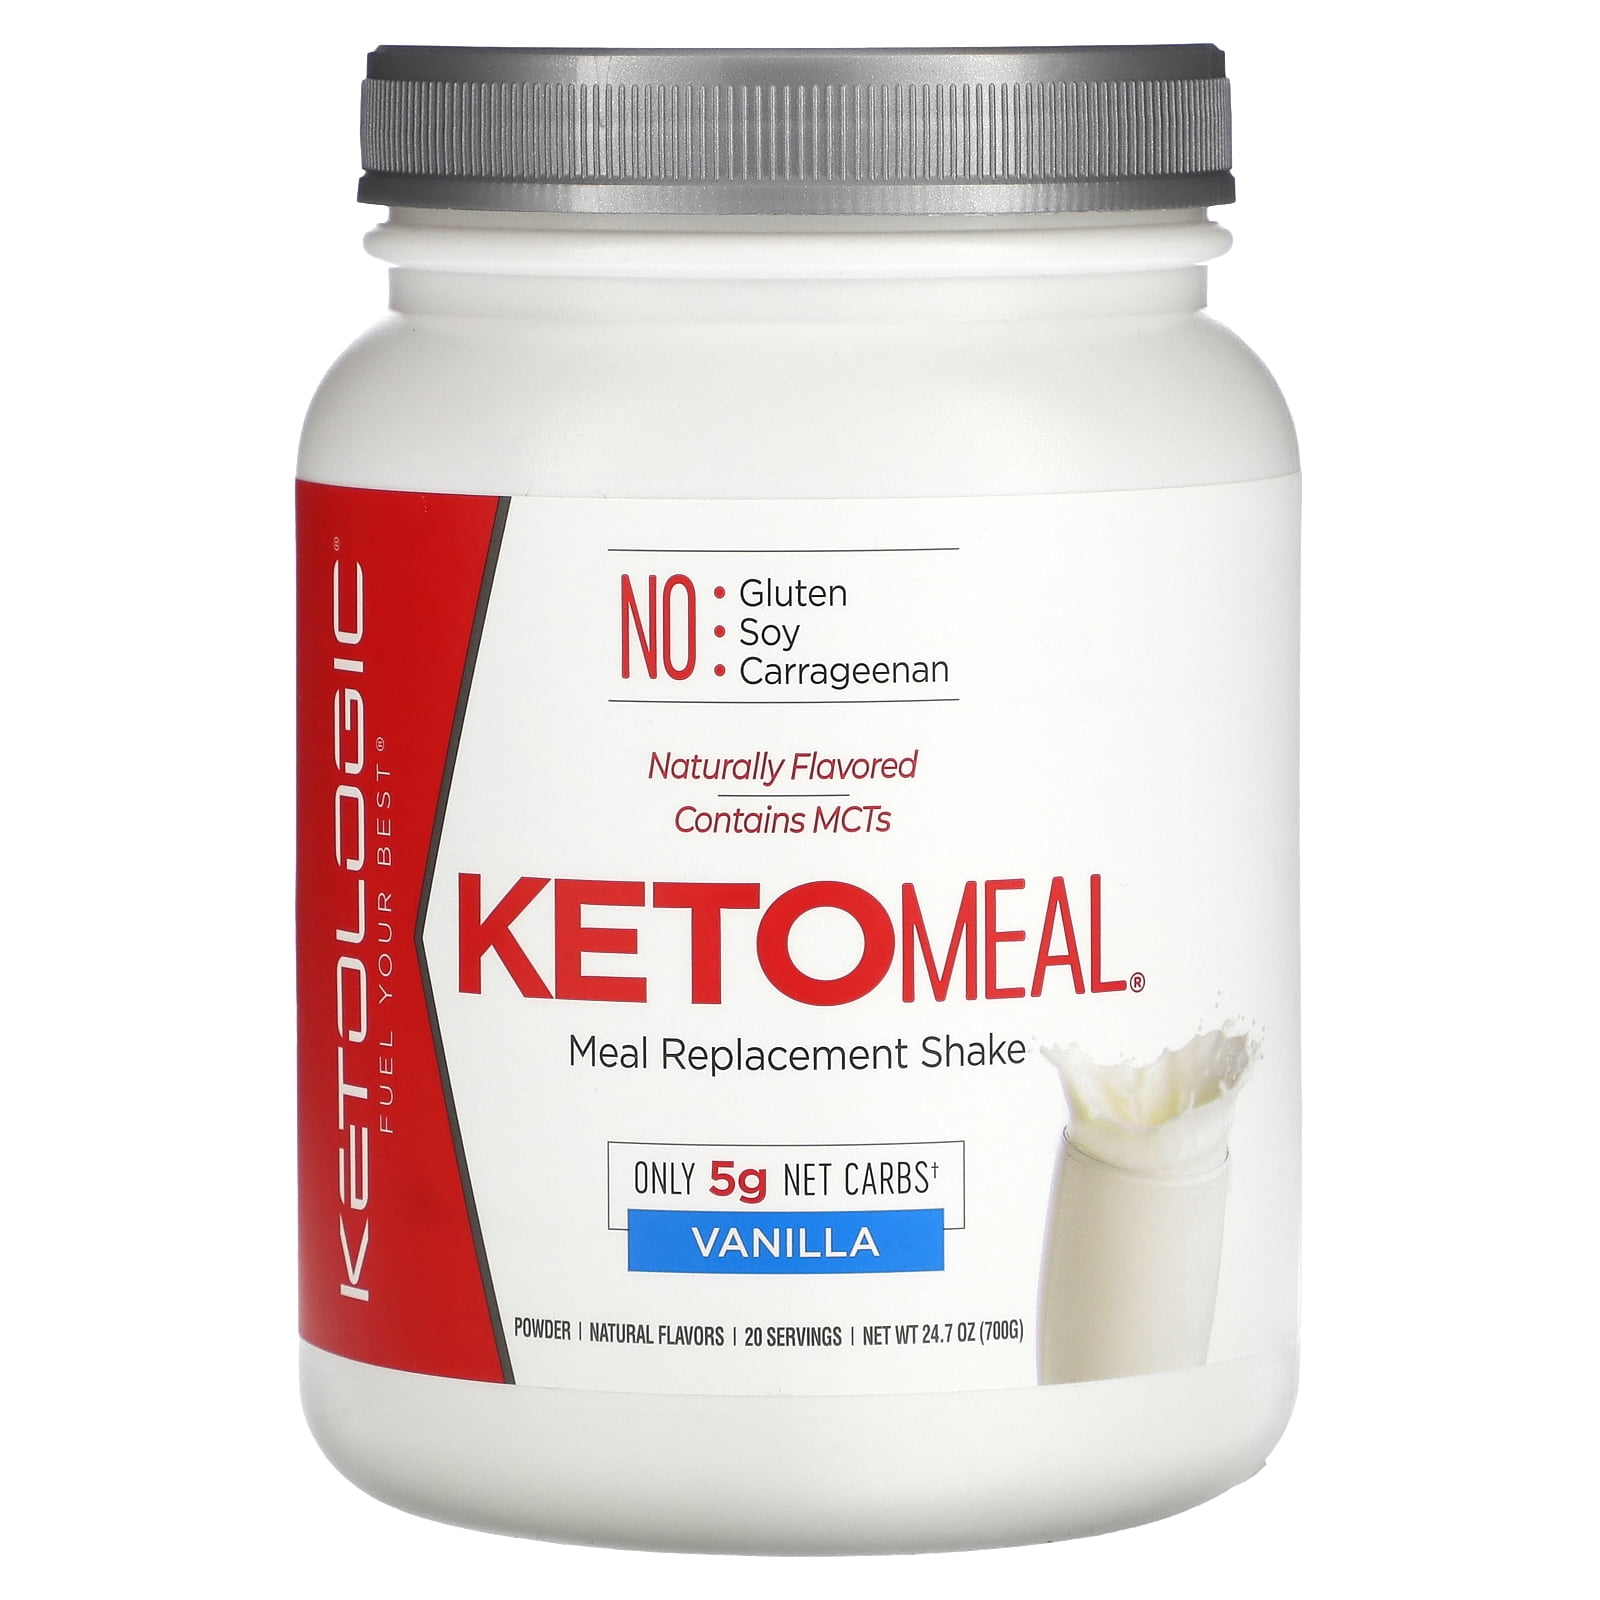 Ketologic Keto Meal Replacement Mct Shake